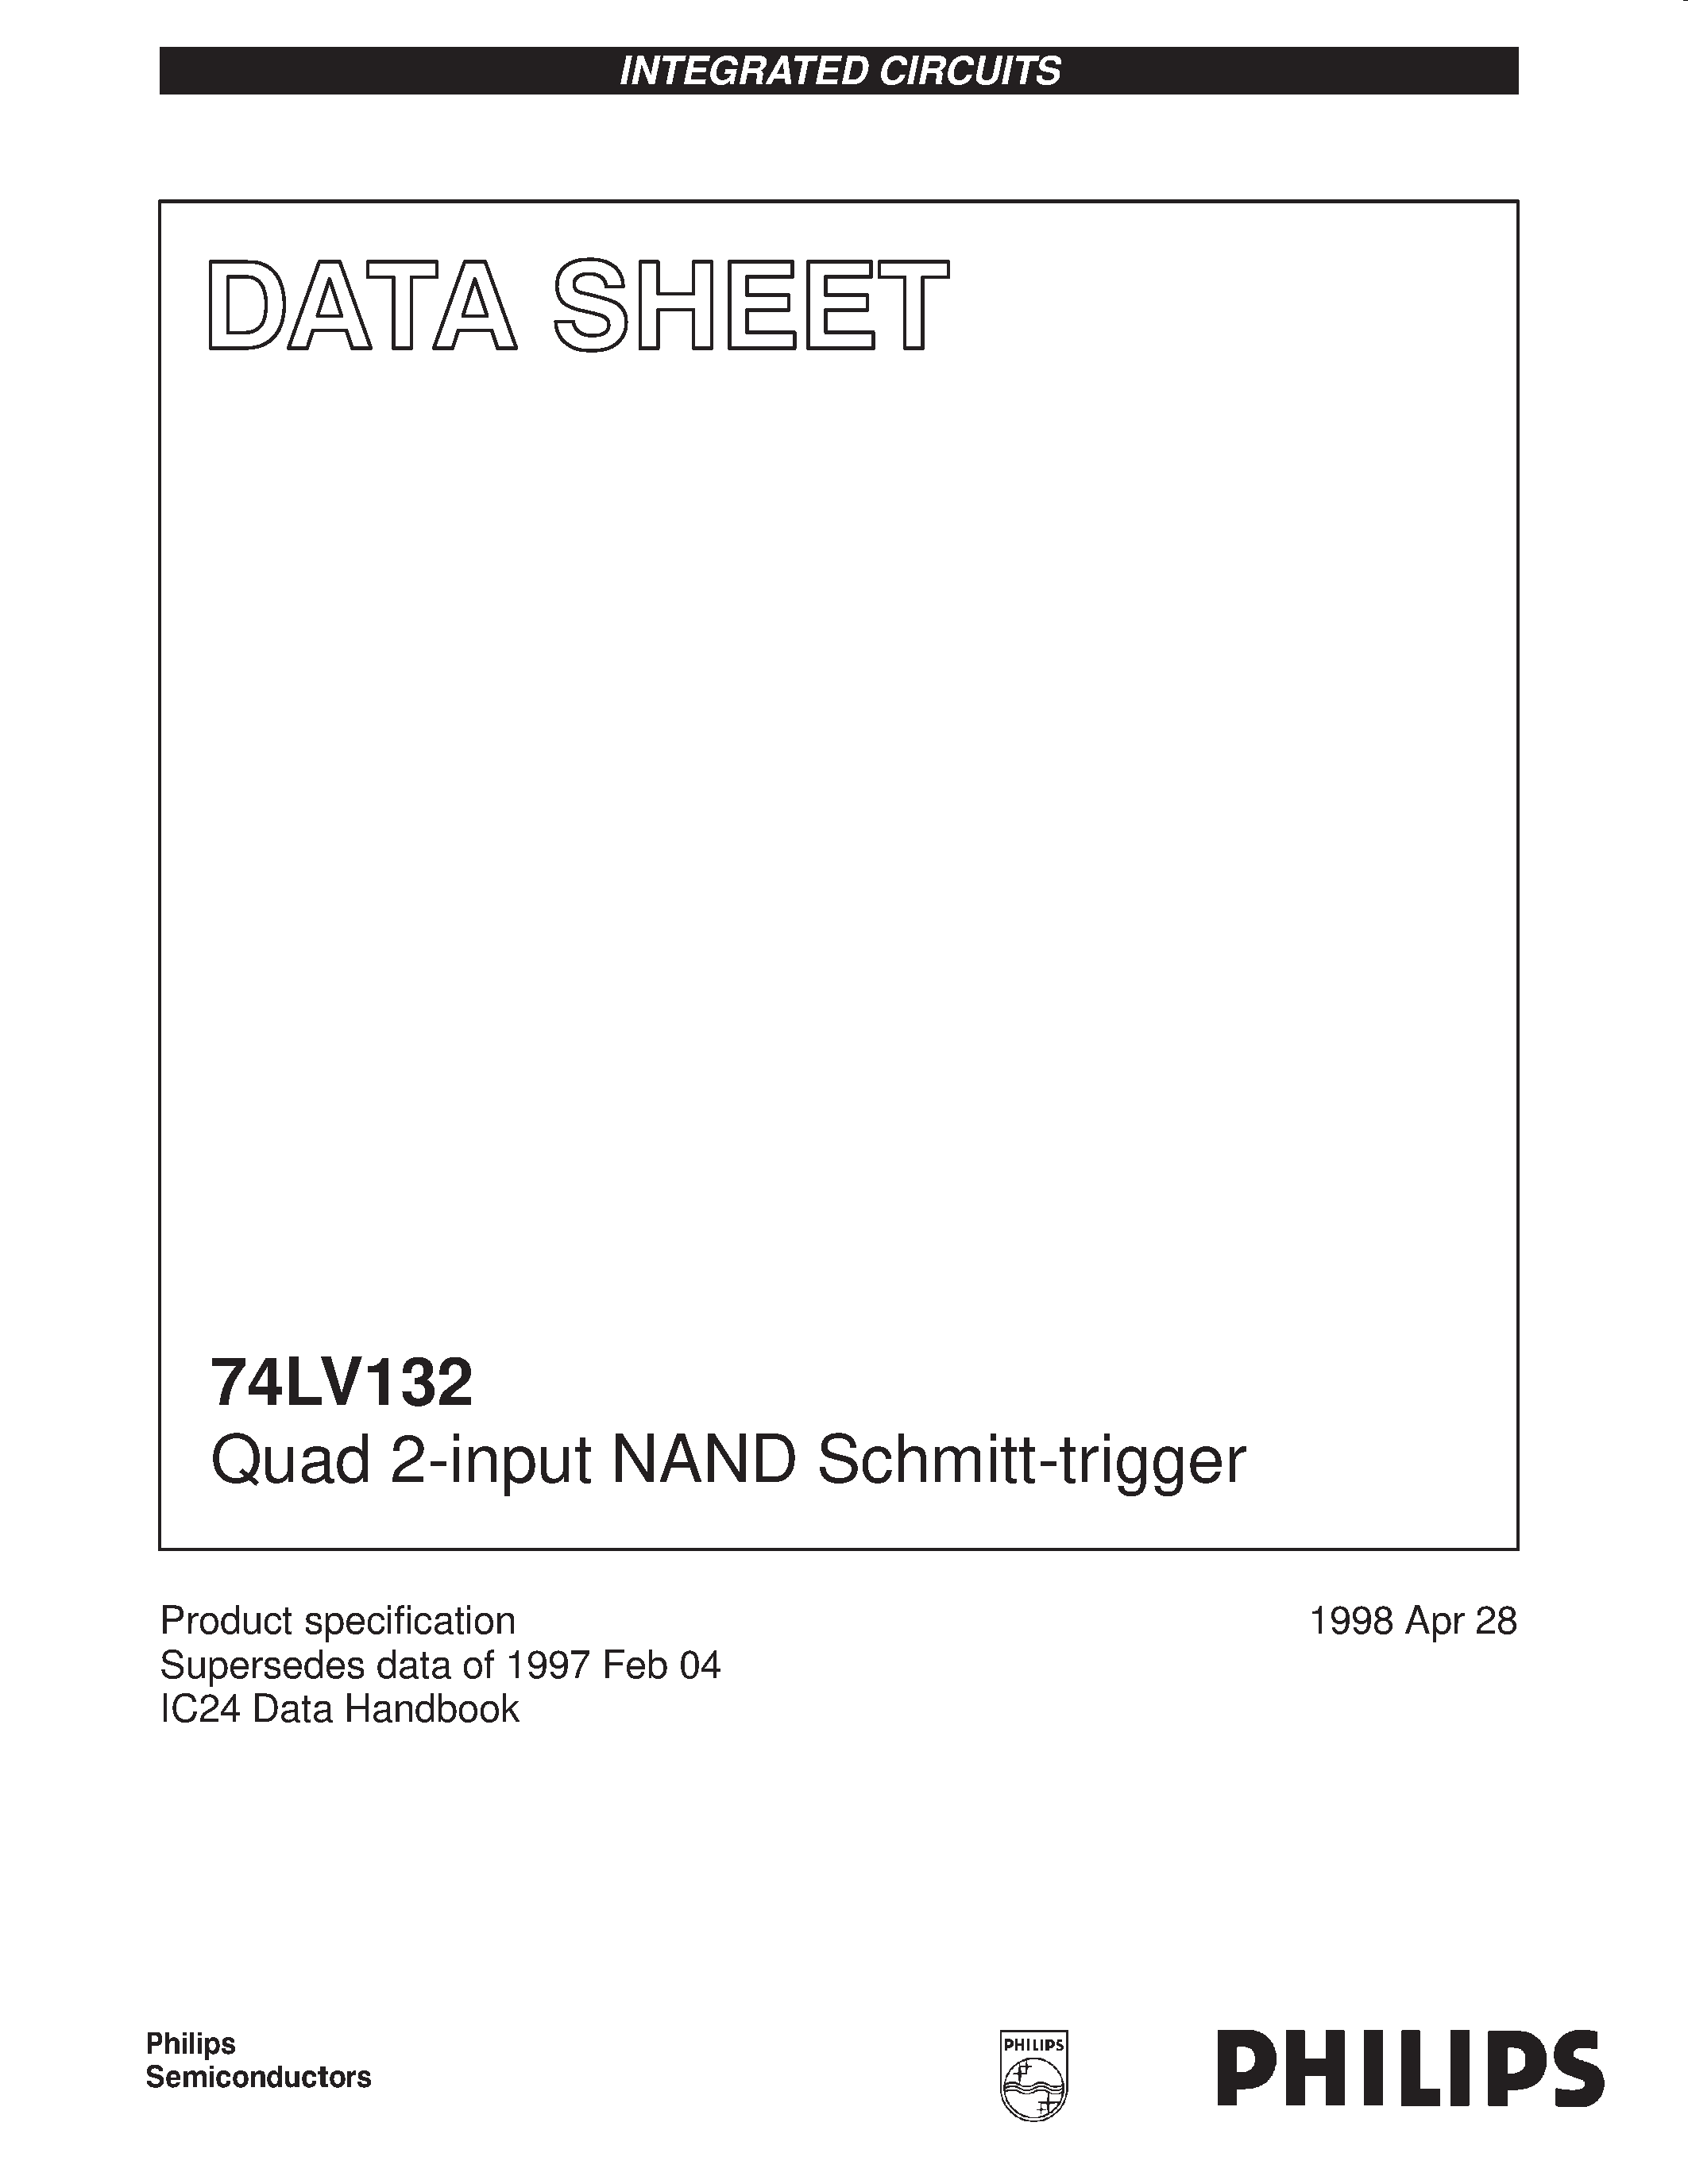 Datasheet 74LV132 - Quad 2-input NAND Schmitt-trigger page 1